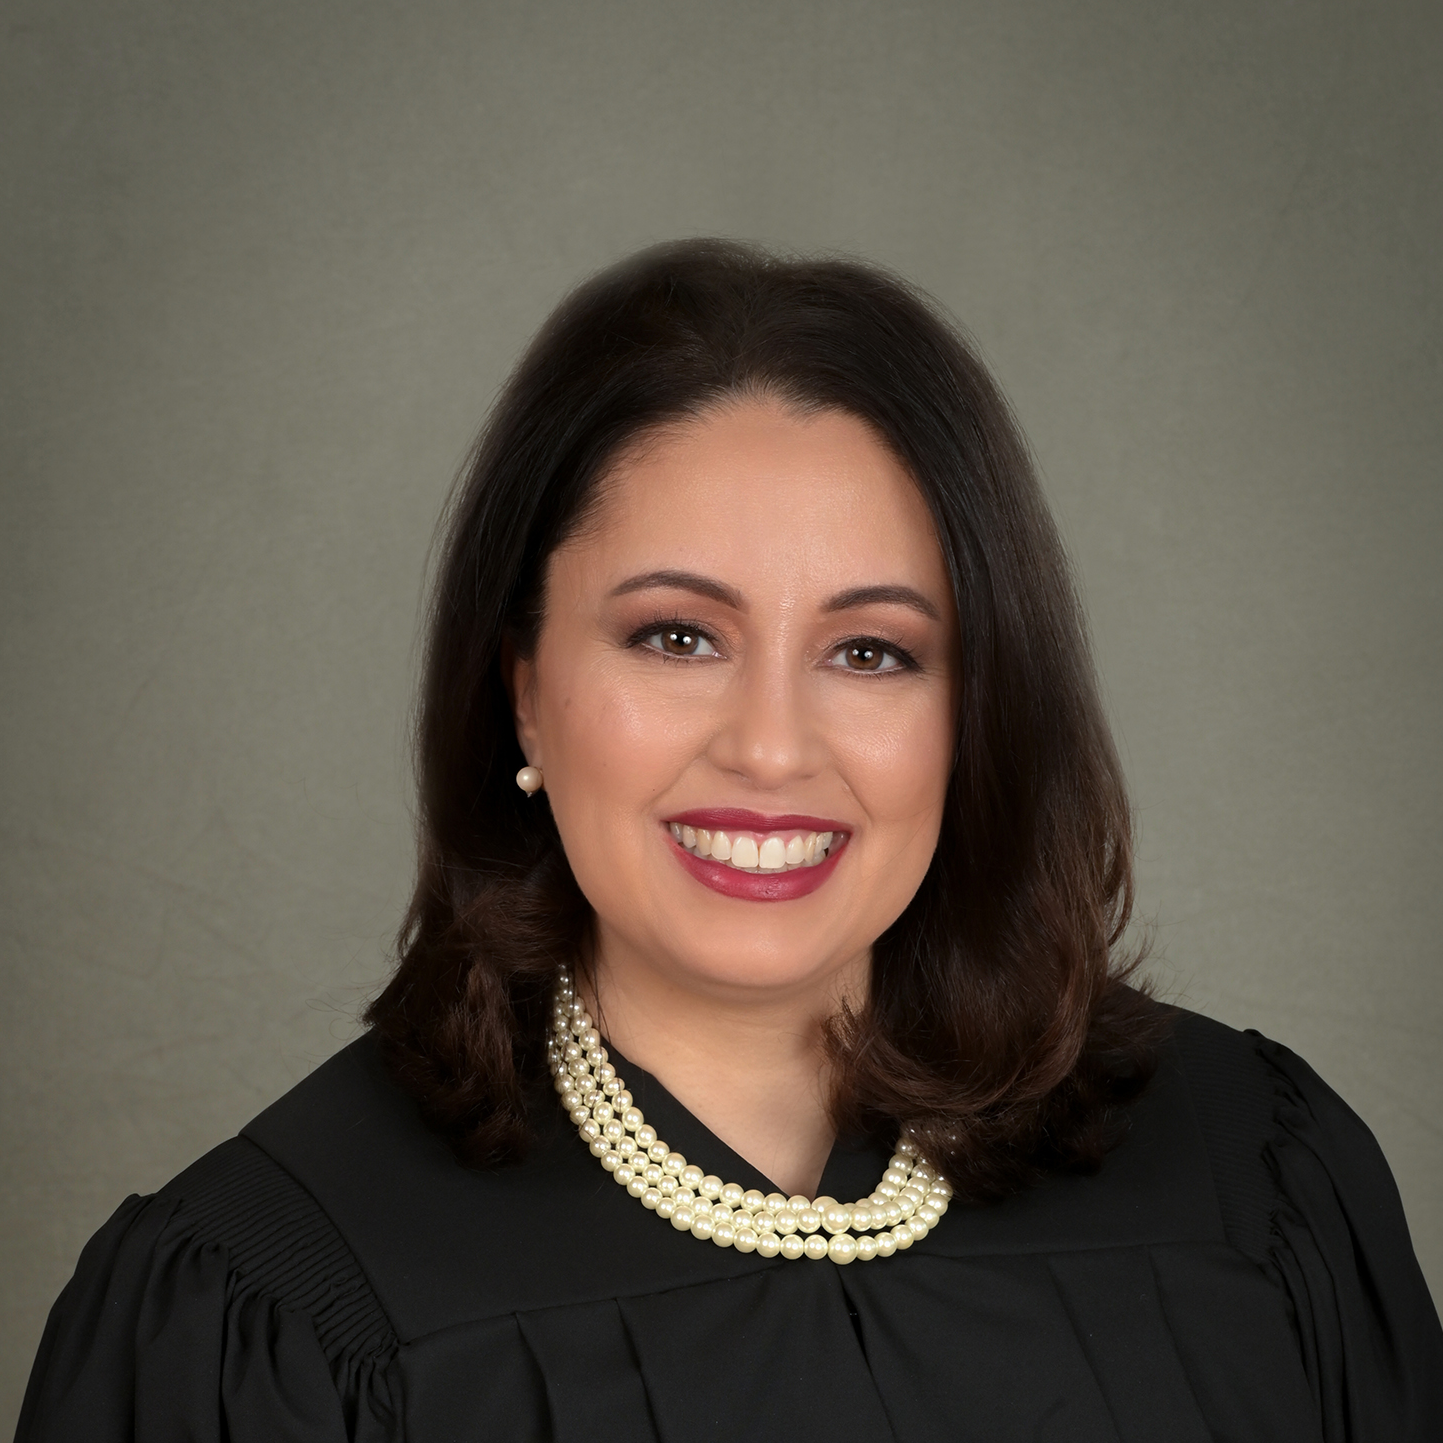 Judge Araceli R. De La Cruz